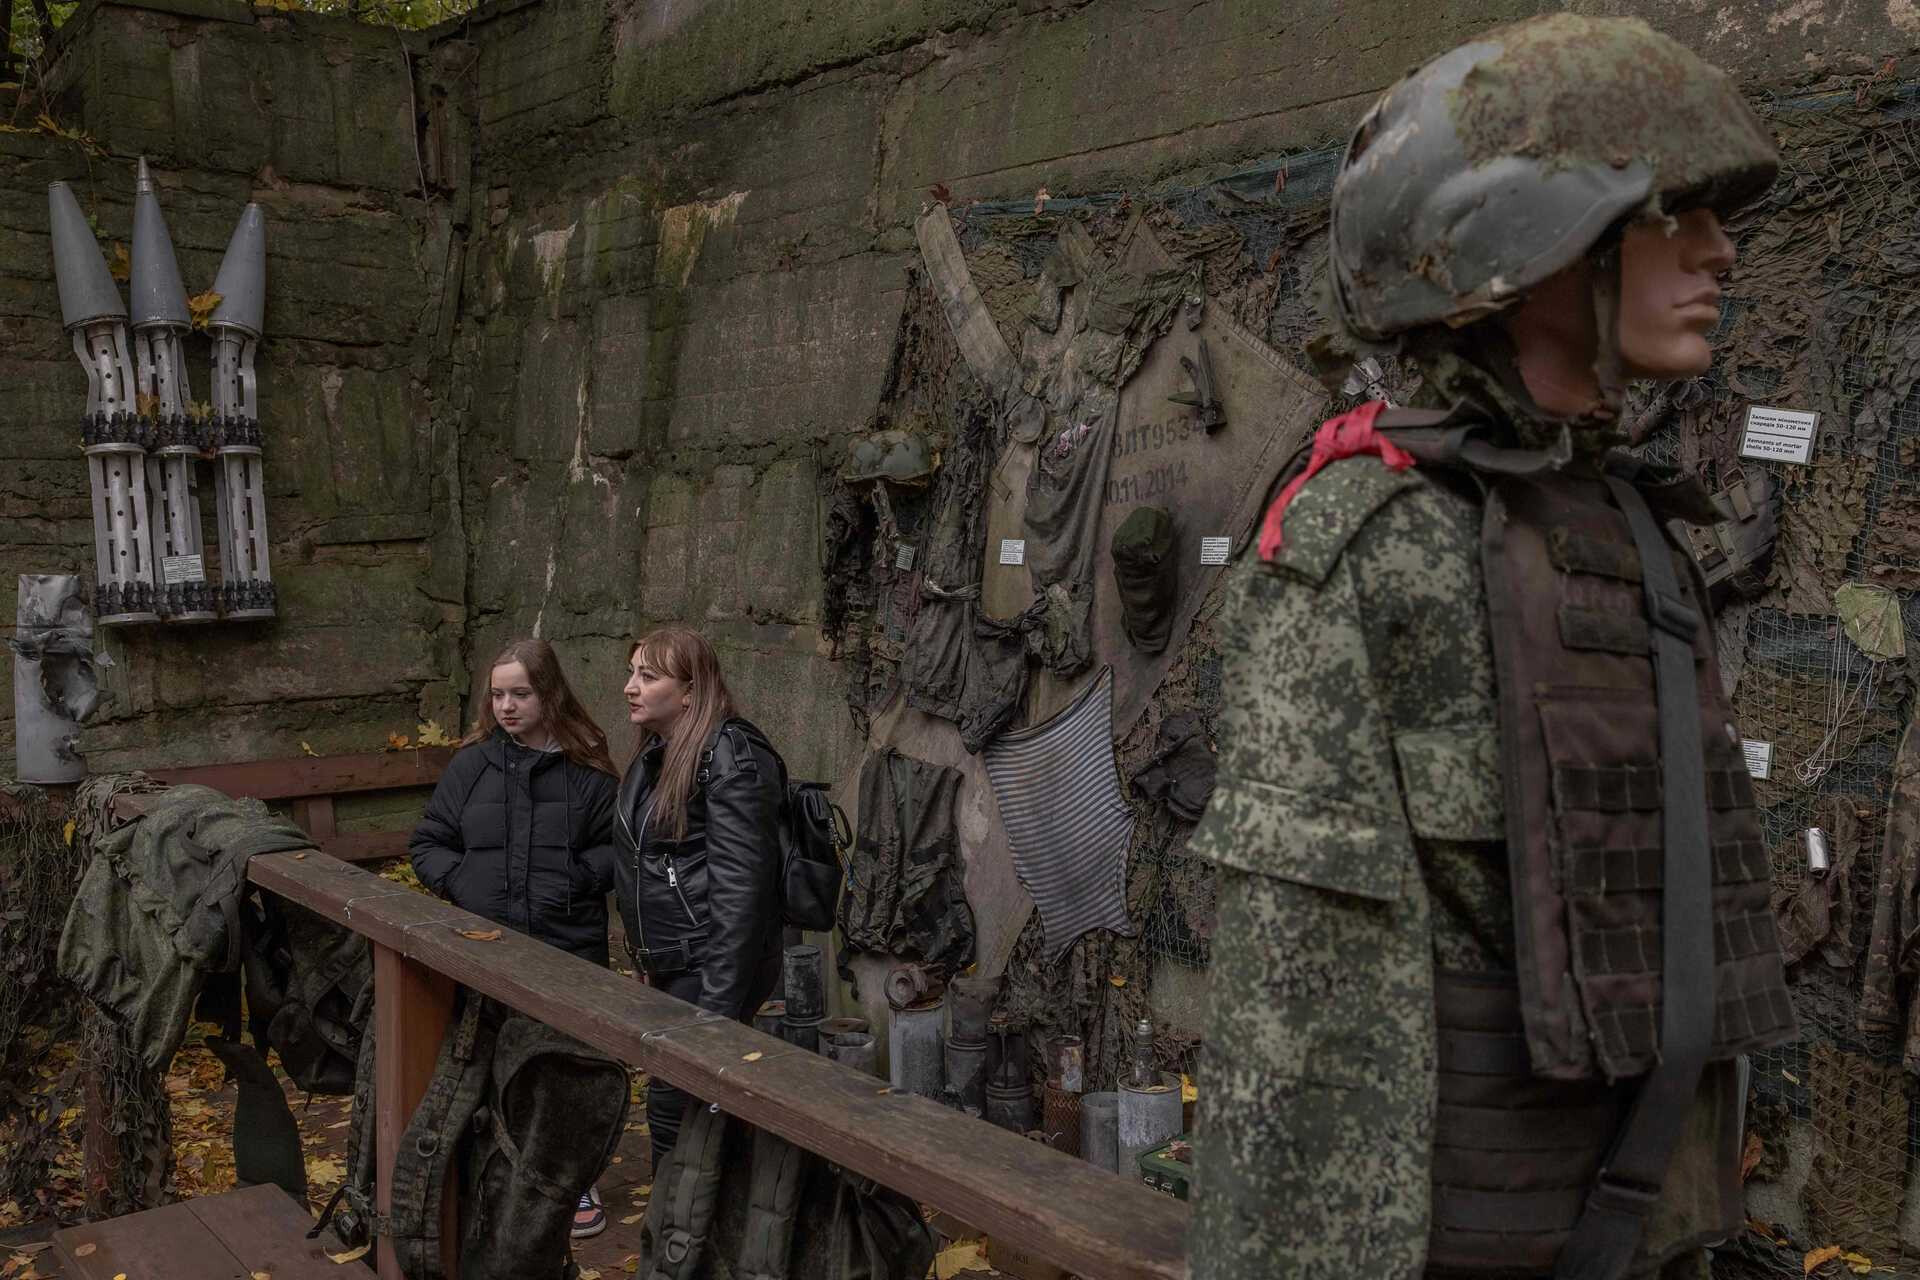 Ein privates russisches Militärunternehmen heuert Frauen an, um in der Ukraine zu kämpfen